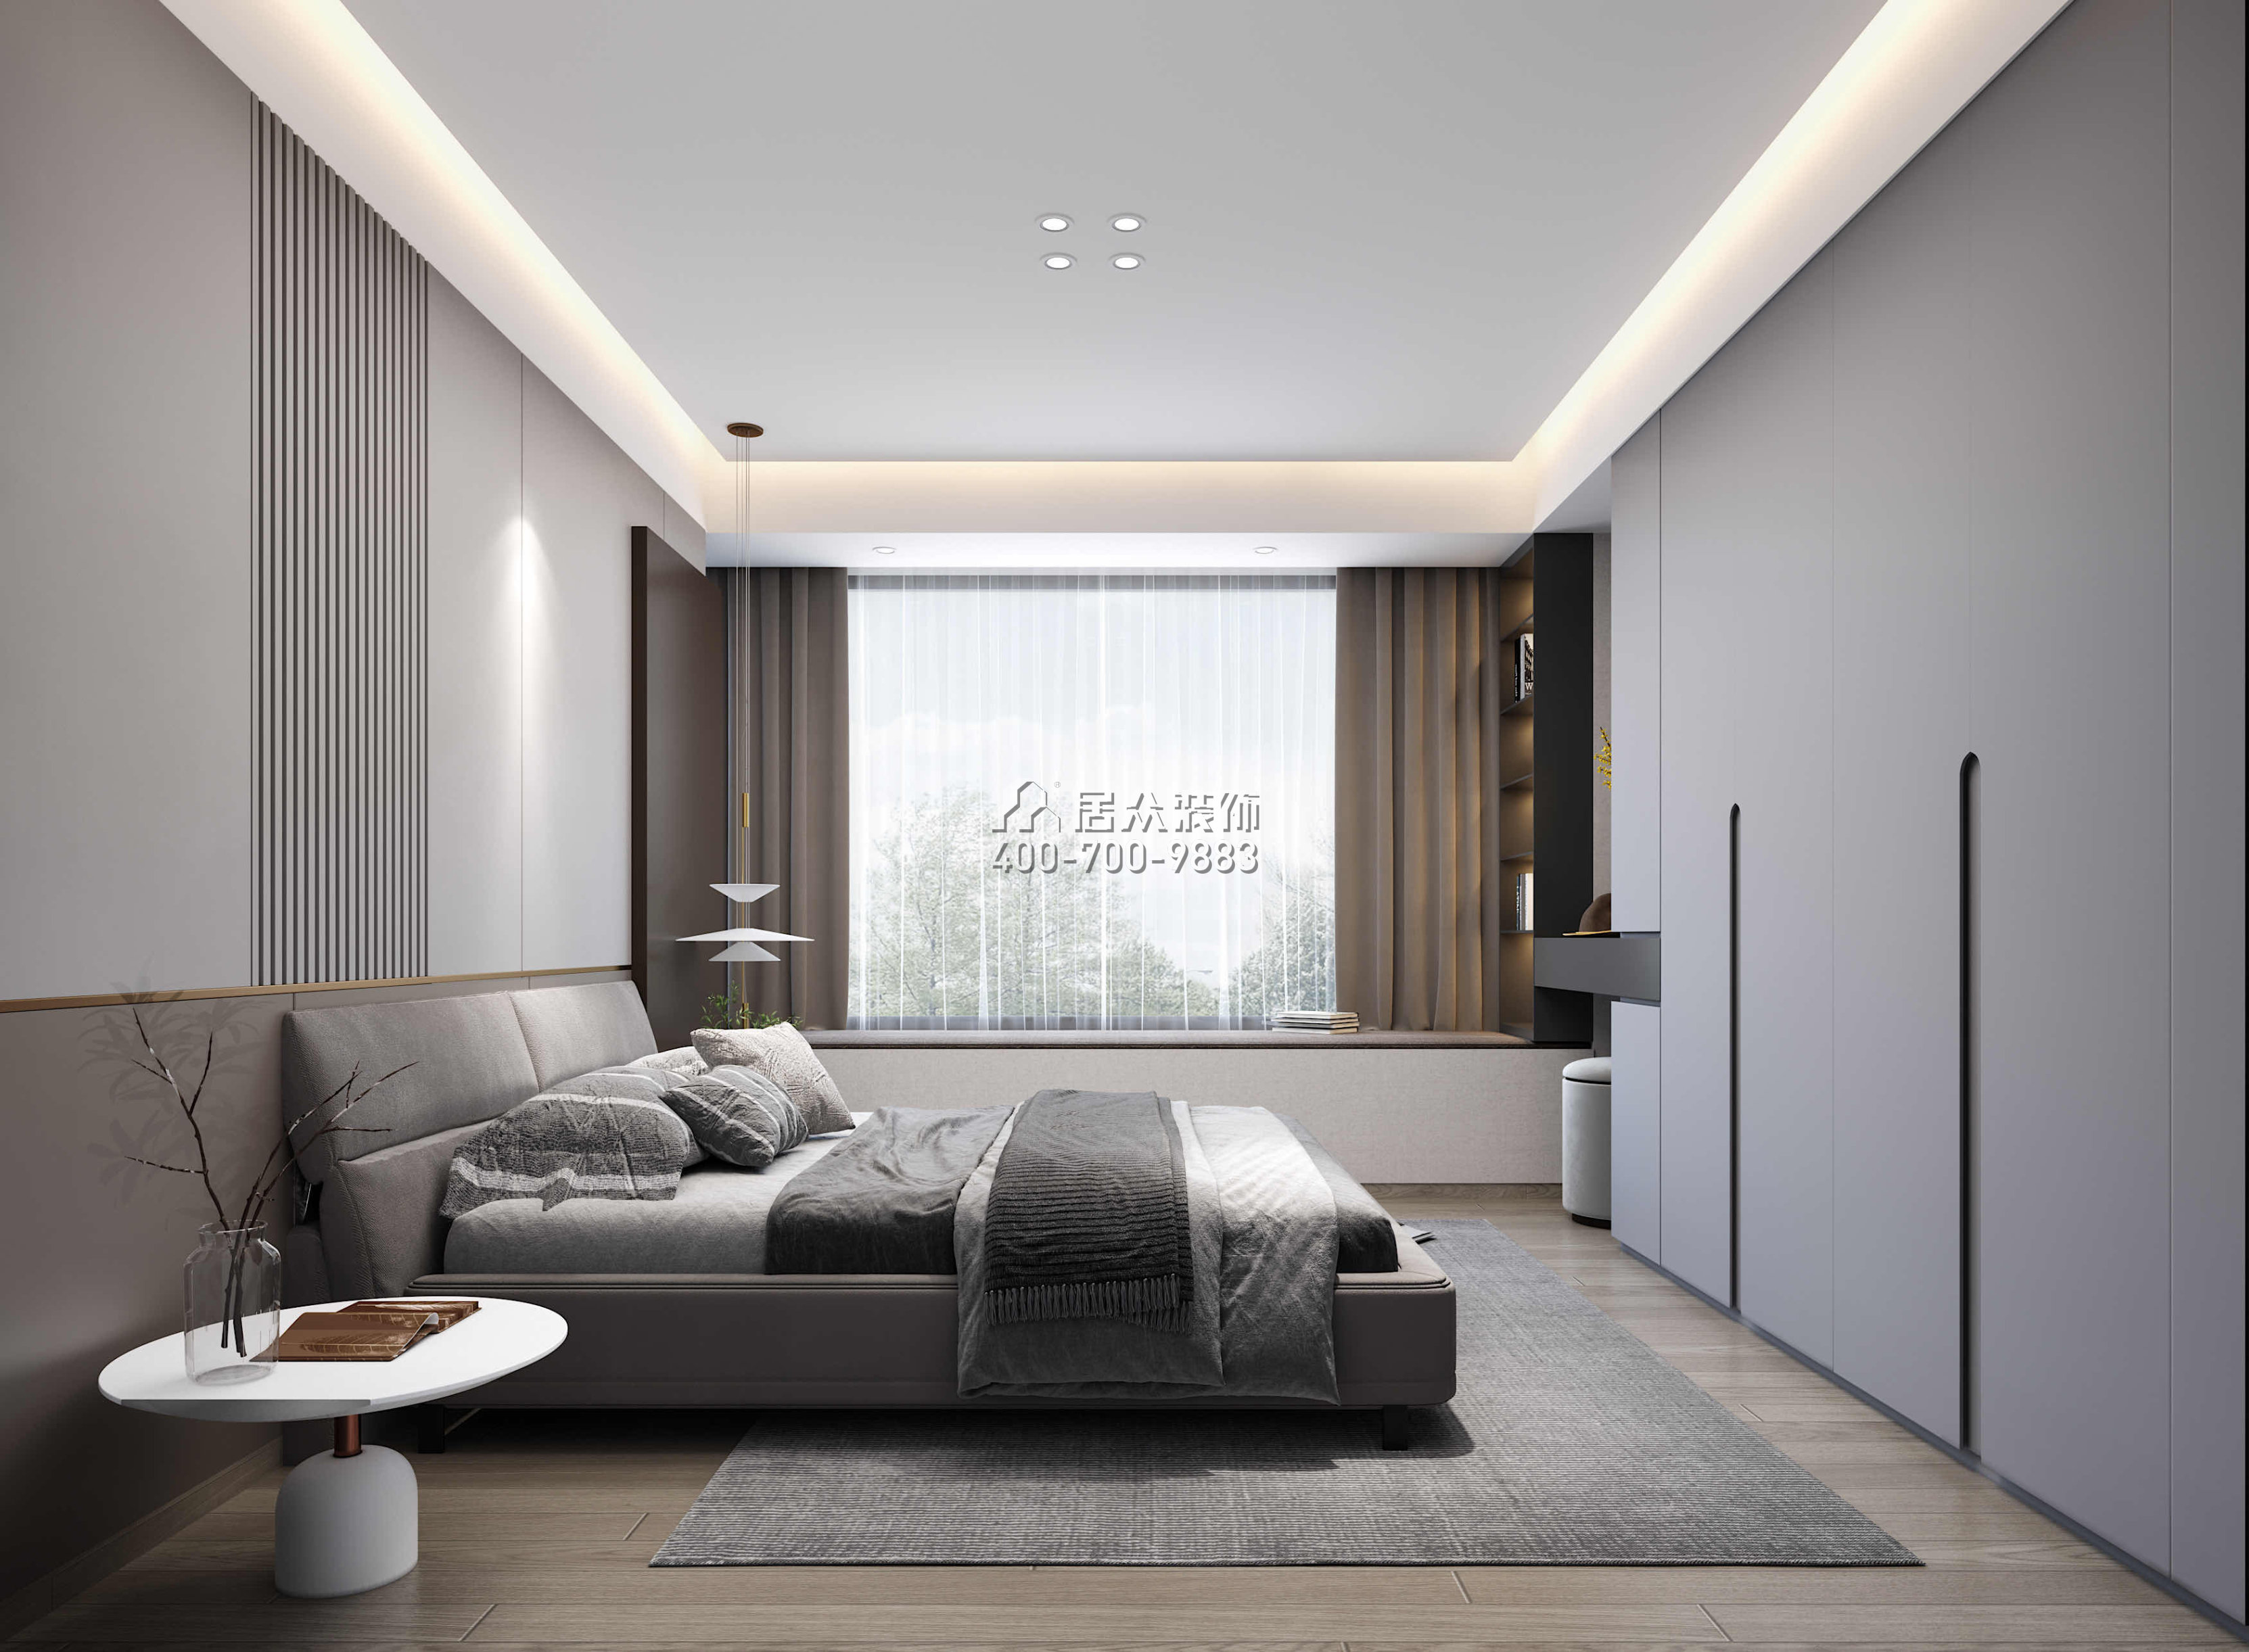 华发绿洋湾168平方米现代简约风格平层户型卧室装修效果图